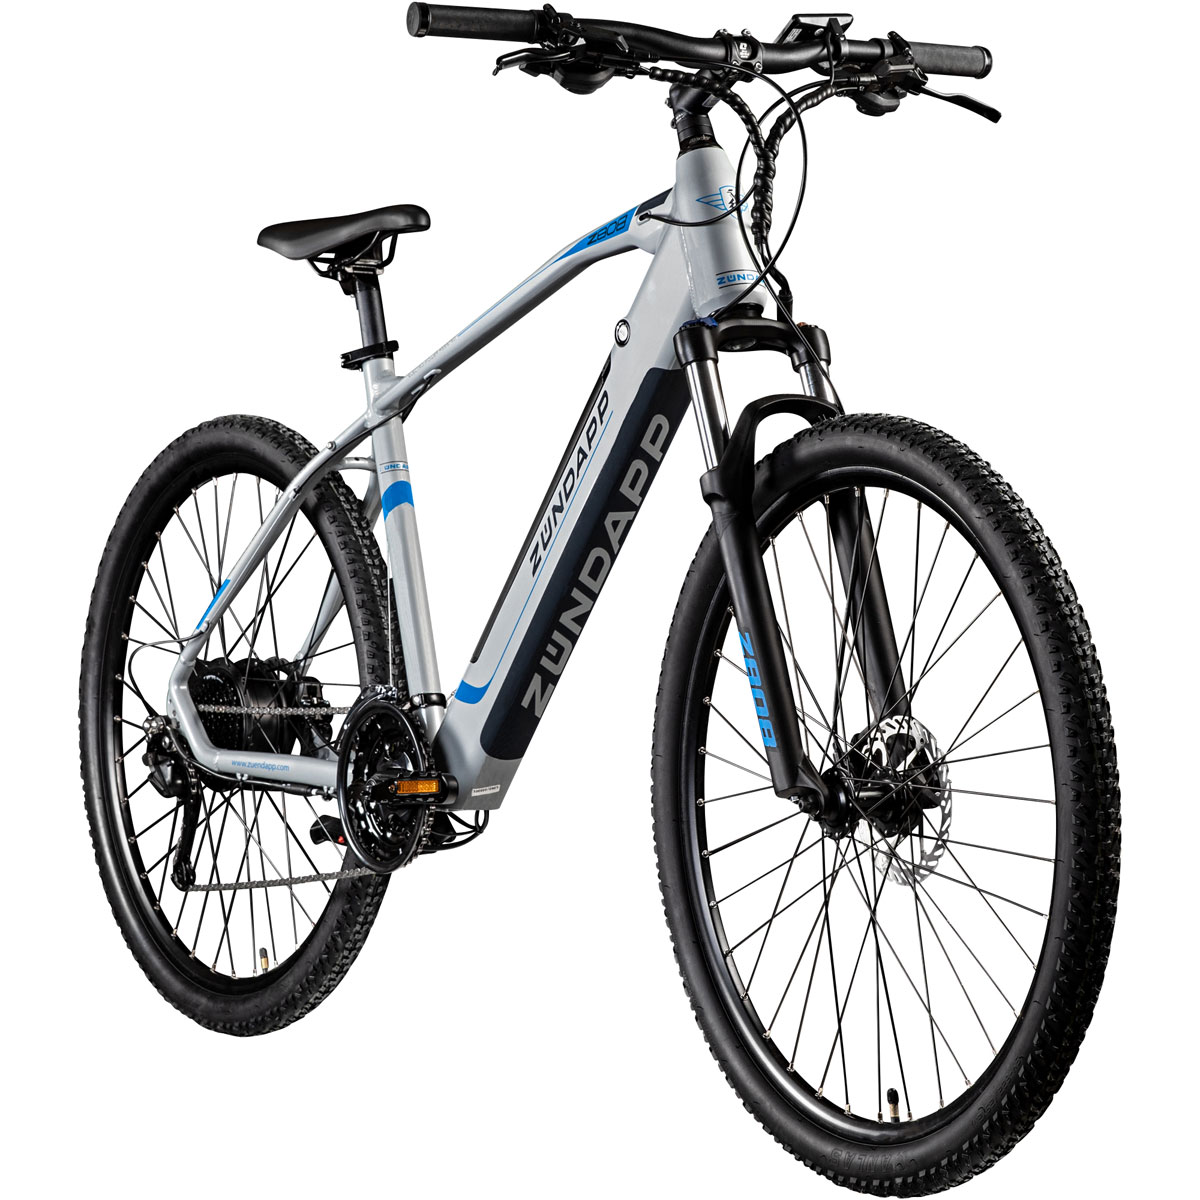 Informationen zu Rabatten im Versandhandel Zündapp E-Mountainbike K018996770 | | blau Z808 | silber